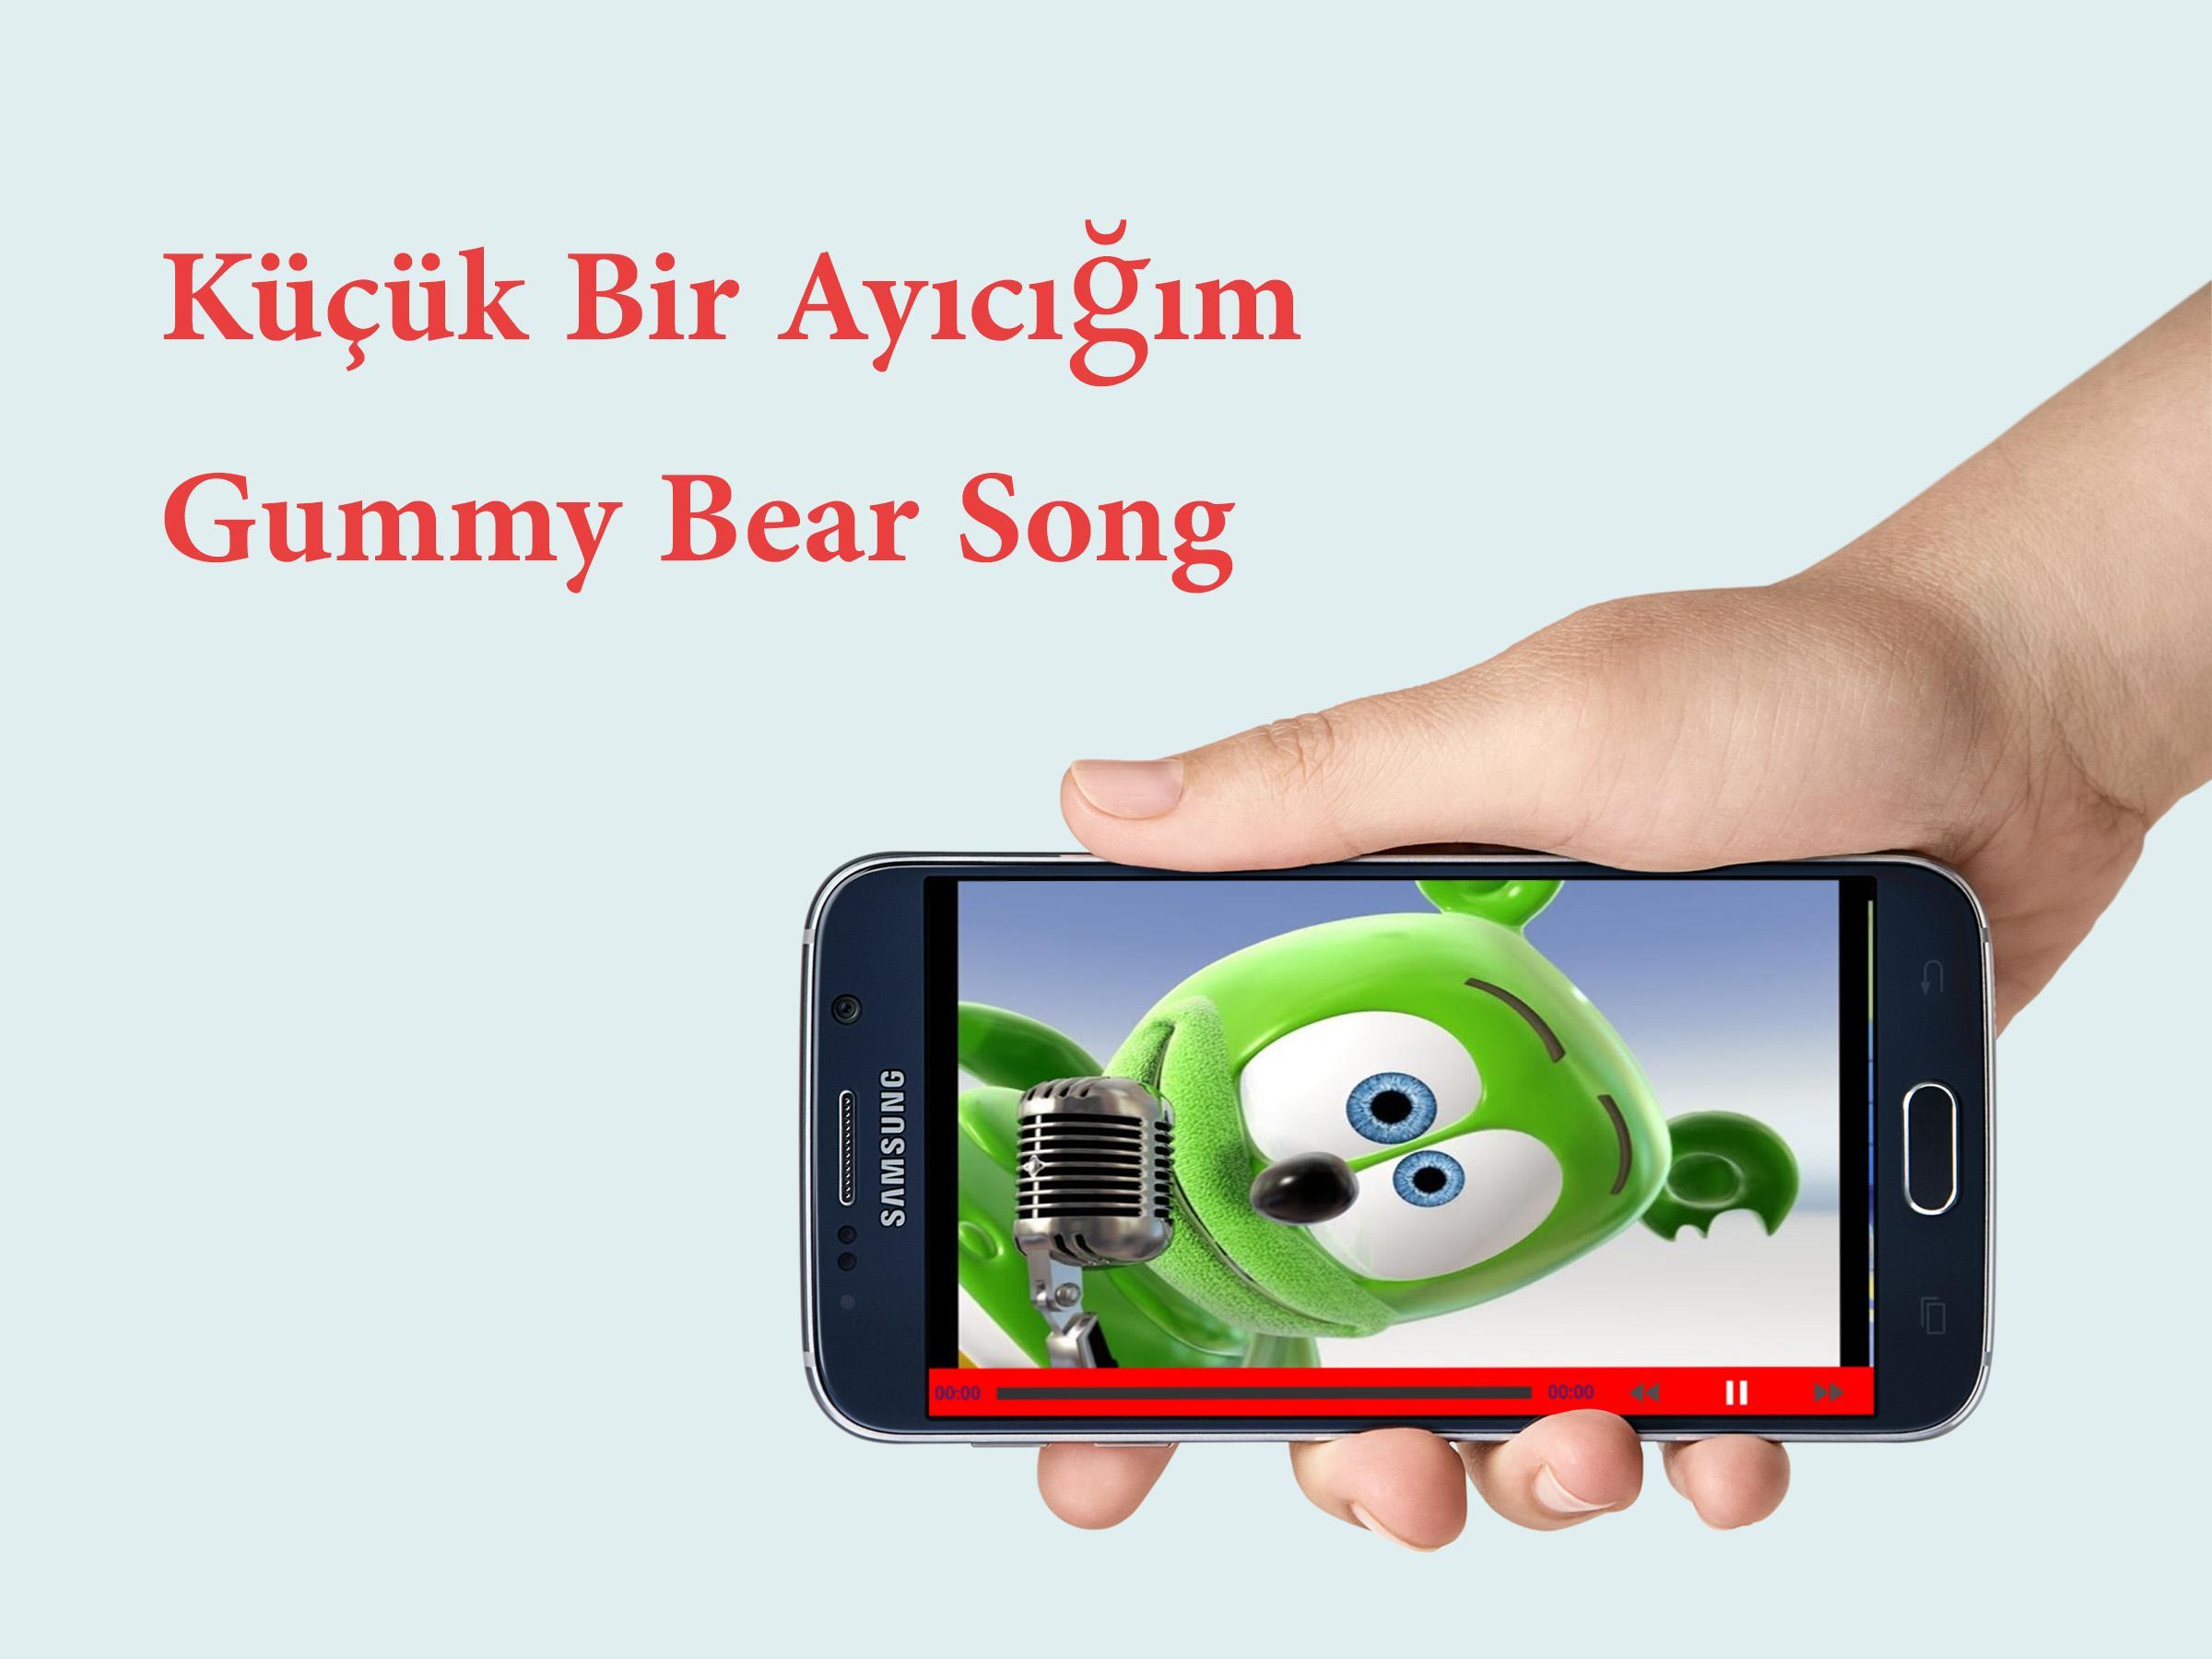 Gummy Bear Kucuk Bir Ayicigim For Android Apk Download